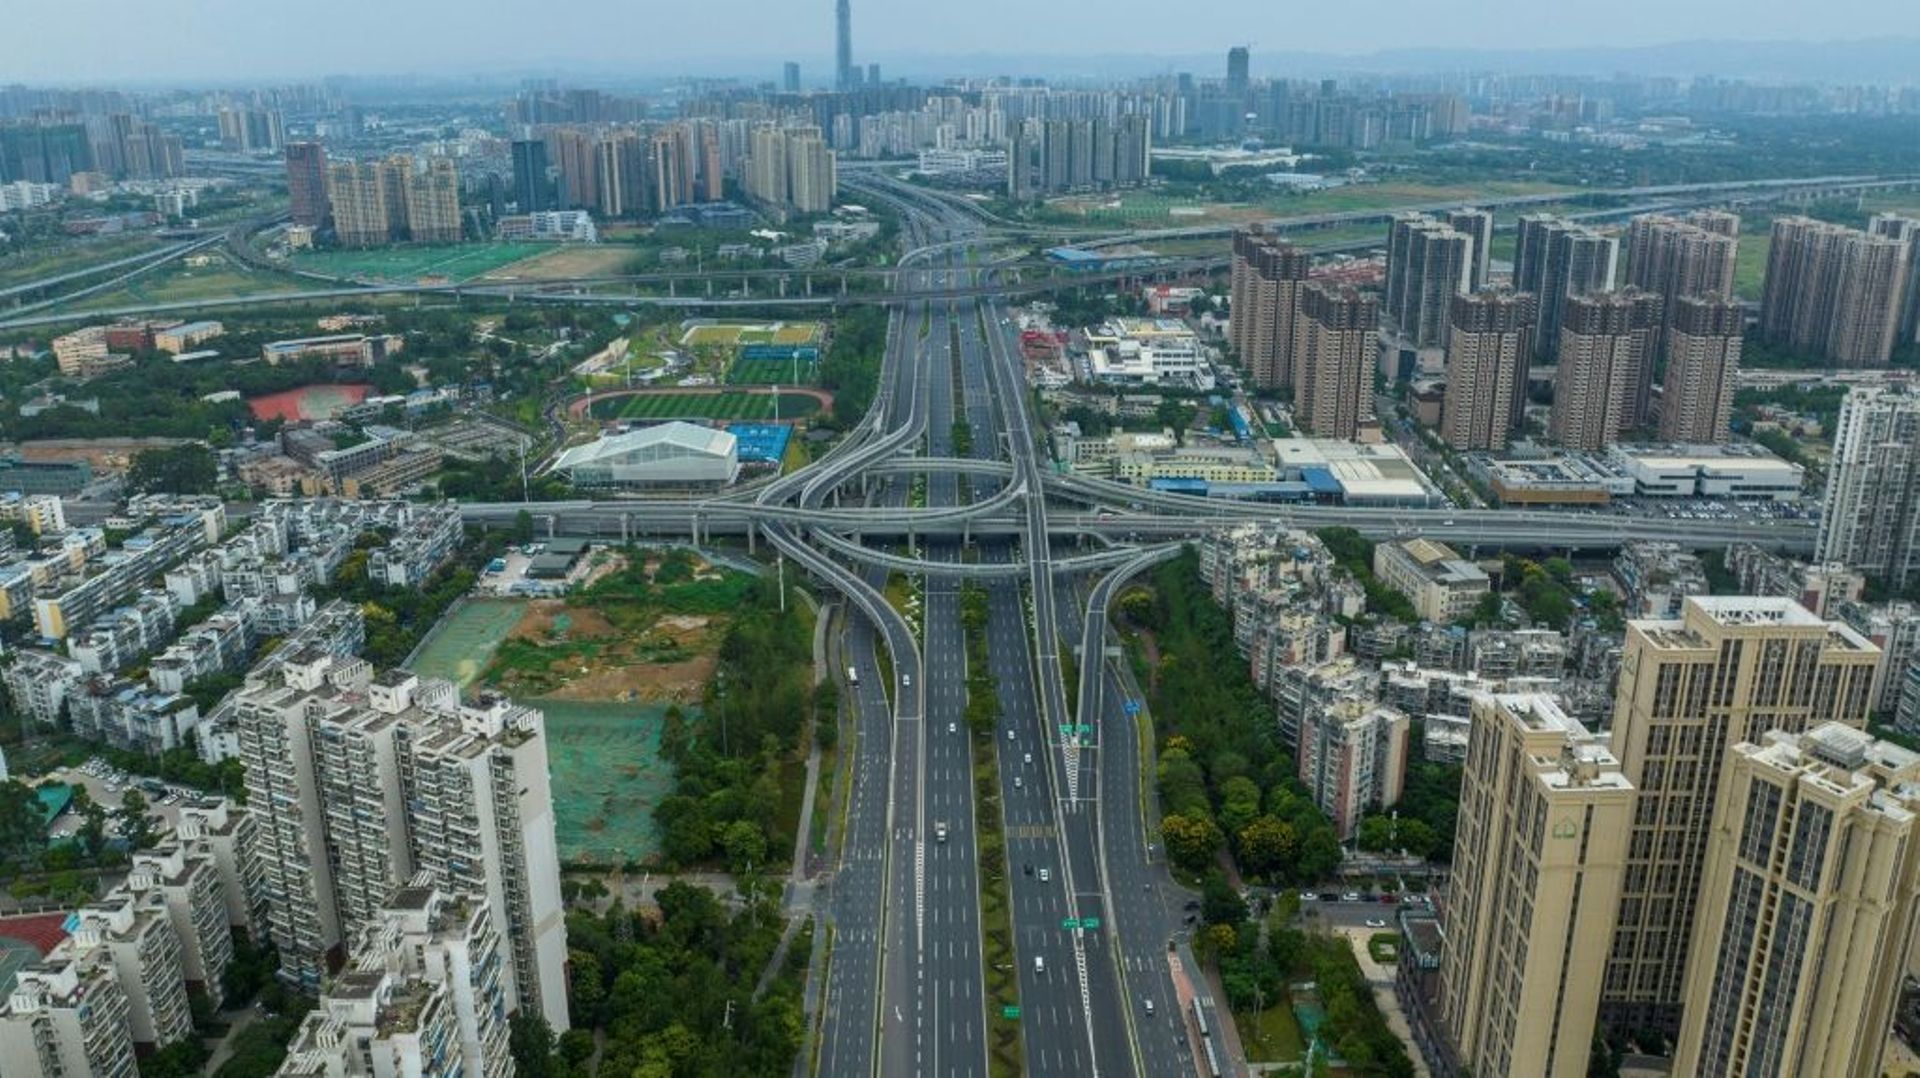 Vue aérienne de la ville de Chengdu confinée, le 1er septembre 2022 dans le sud-ouest de la Chine